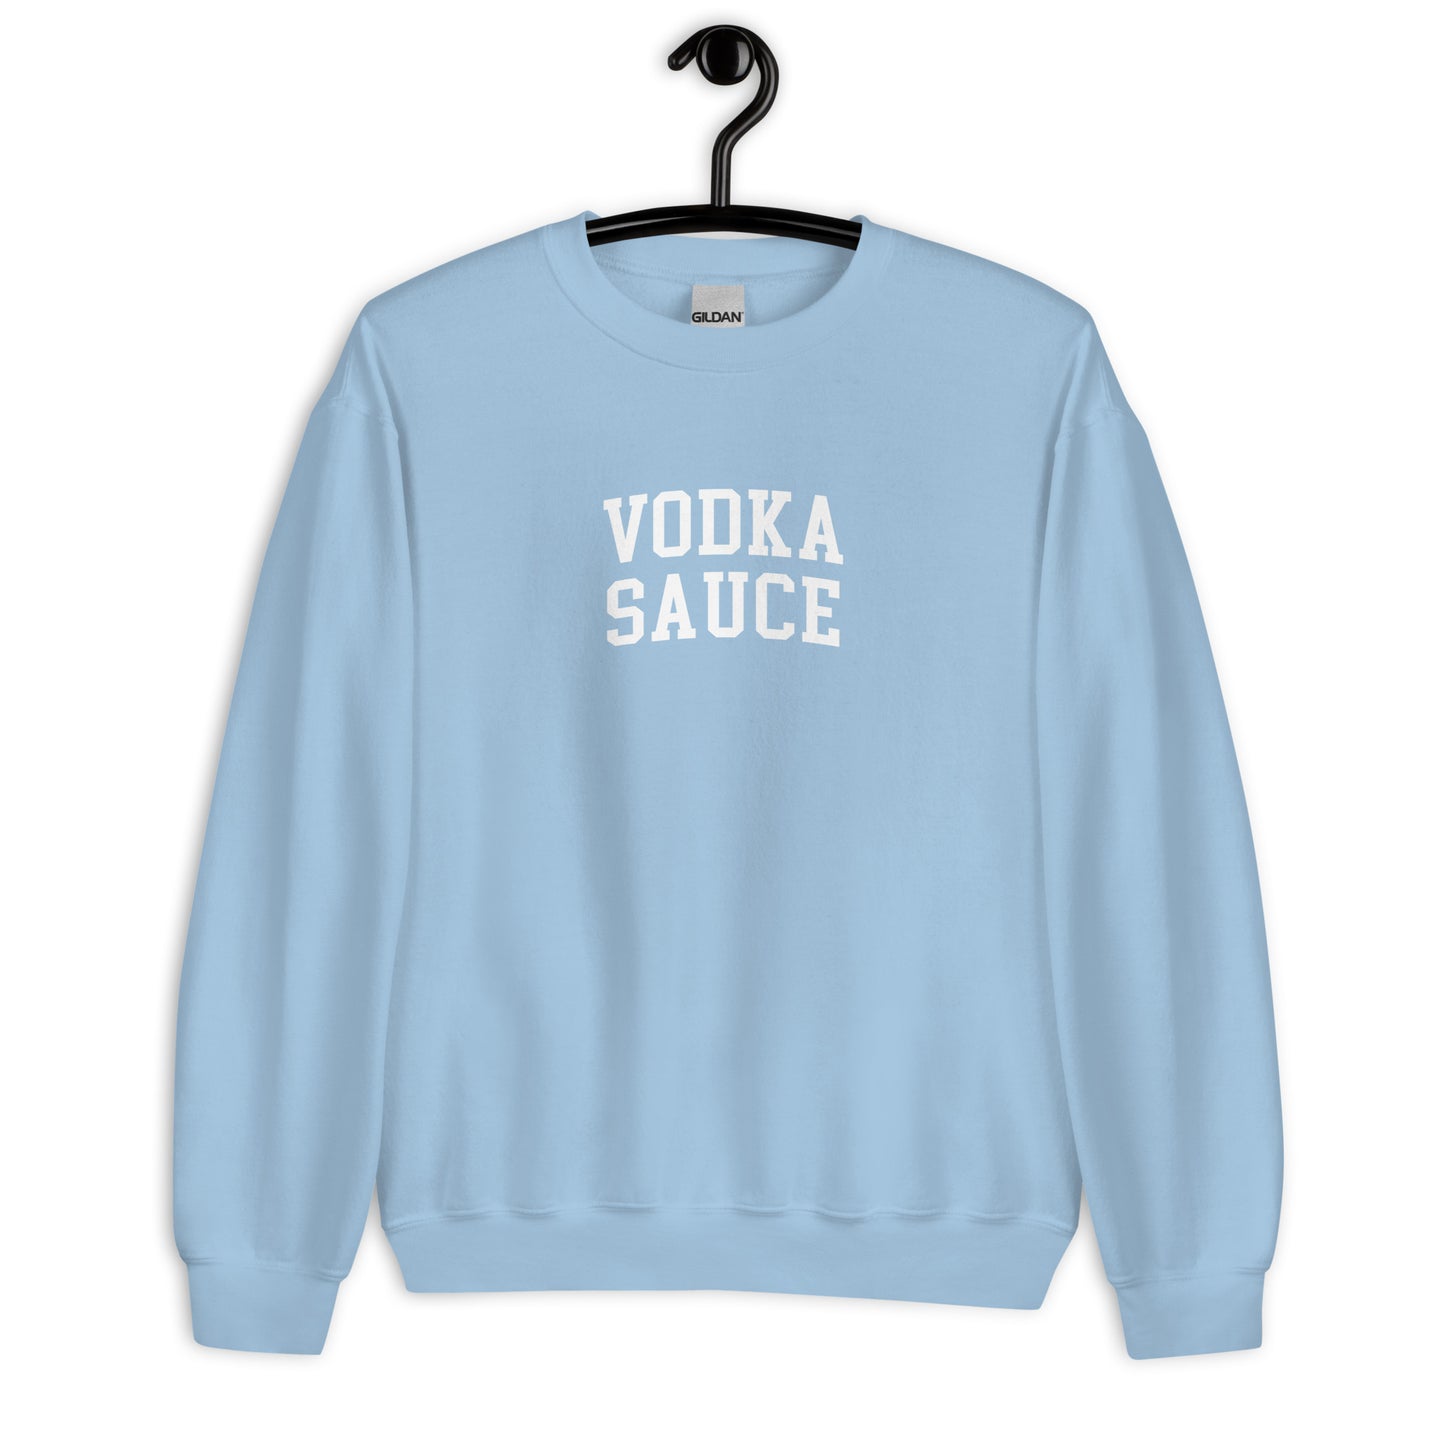 Vodka Sauce Sweatshirt - Arched Font